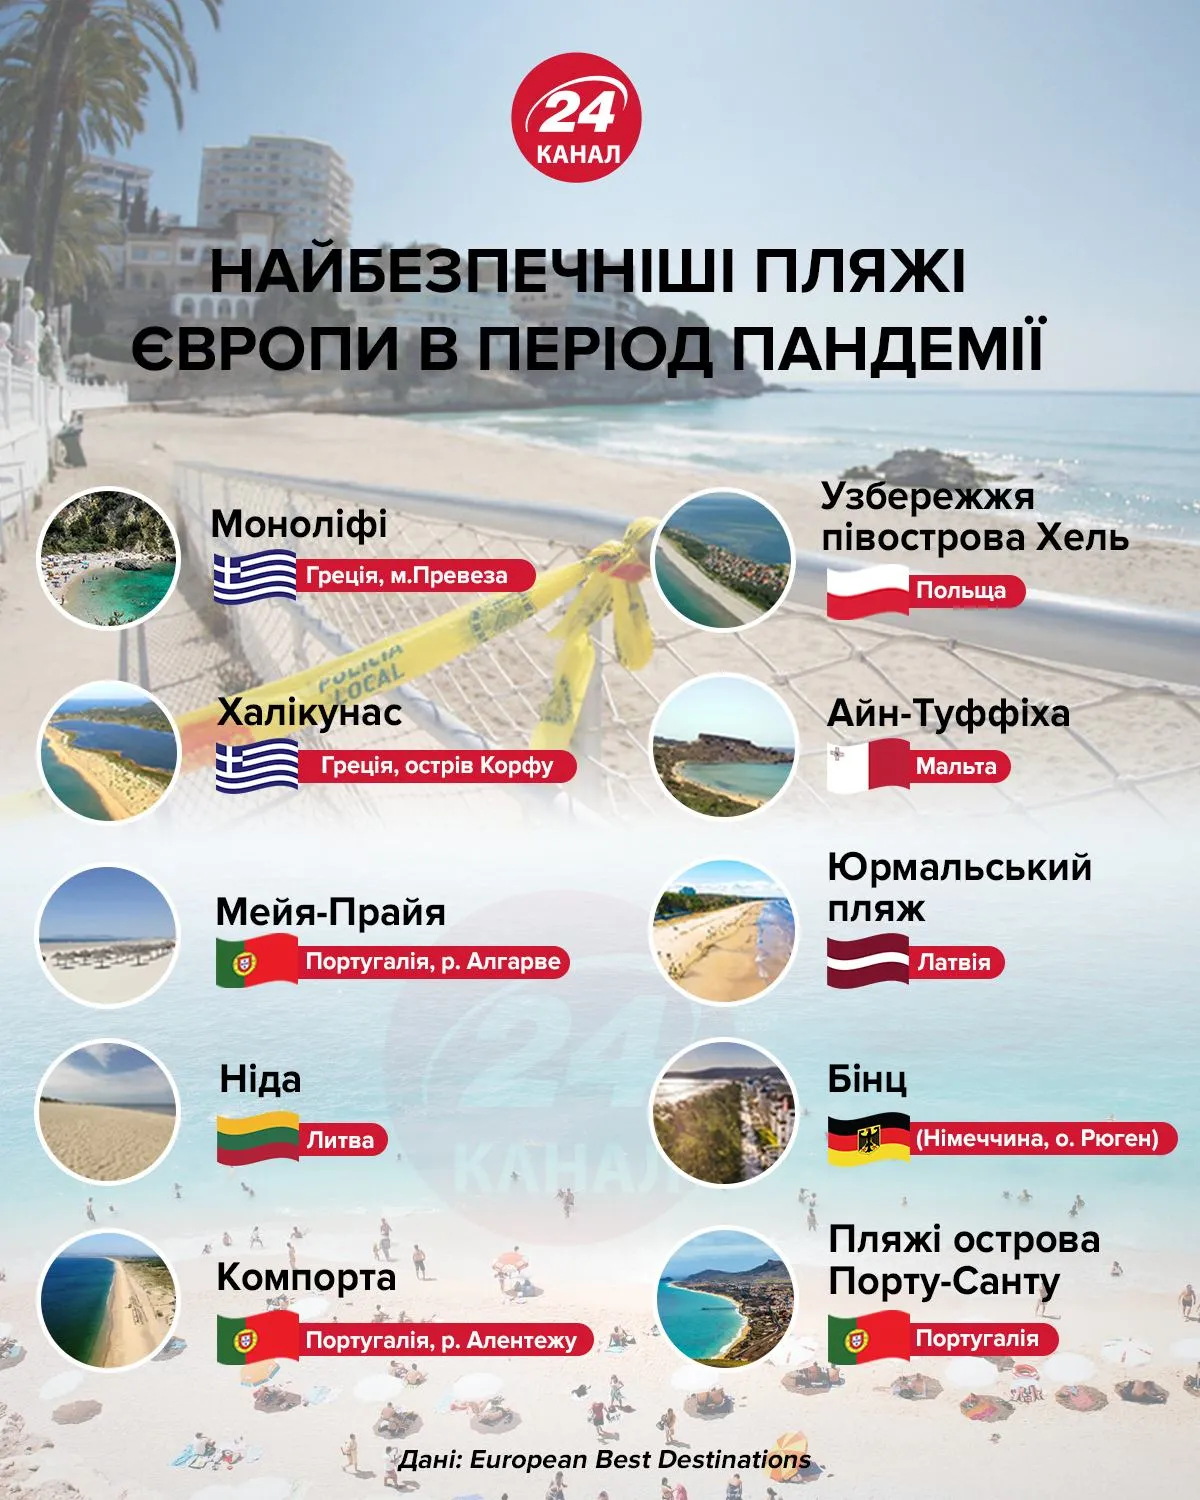 Найбезпечніші пляжі інфографіка 24 канал